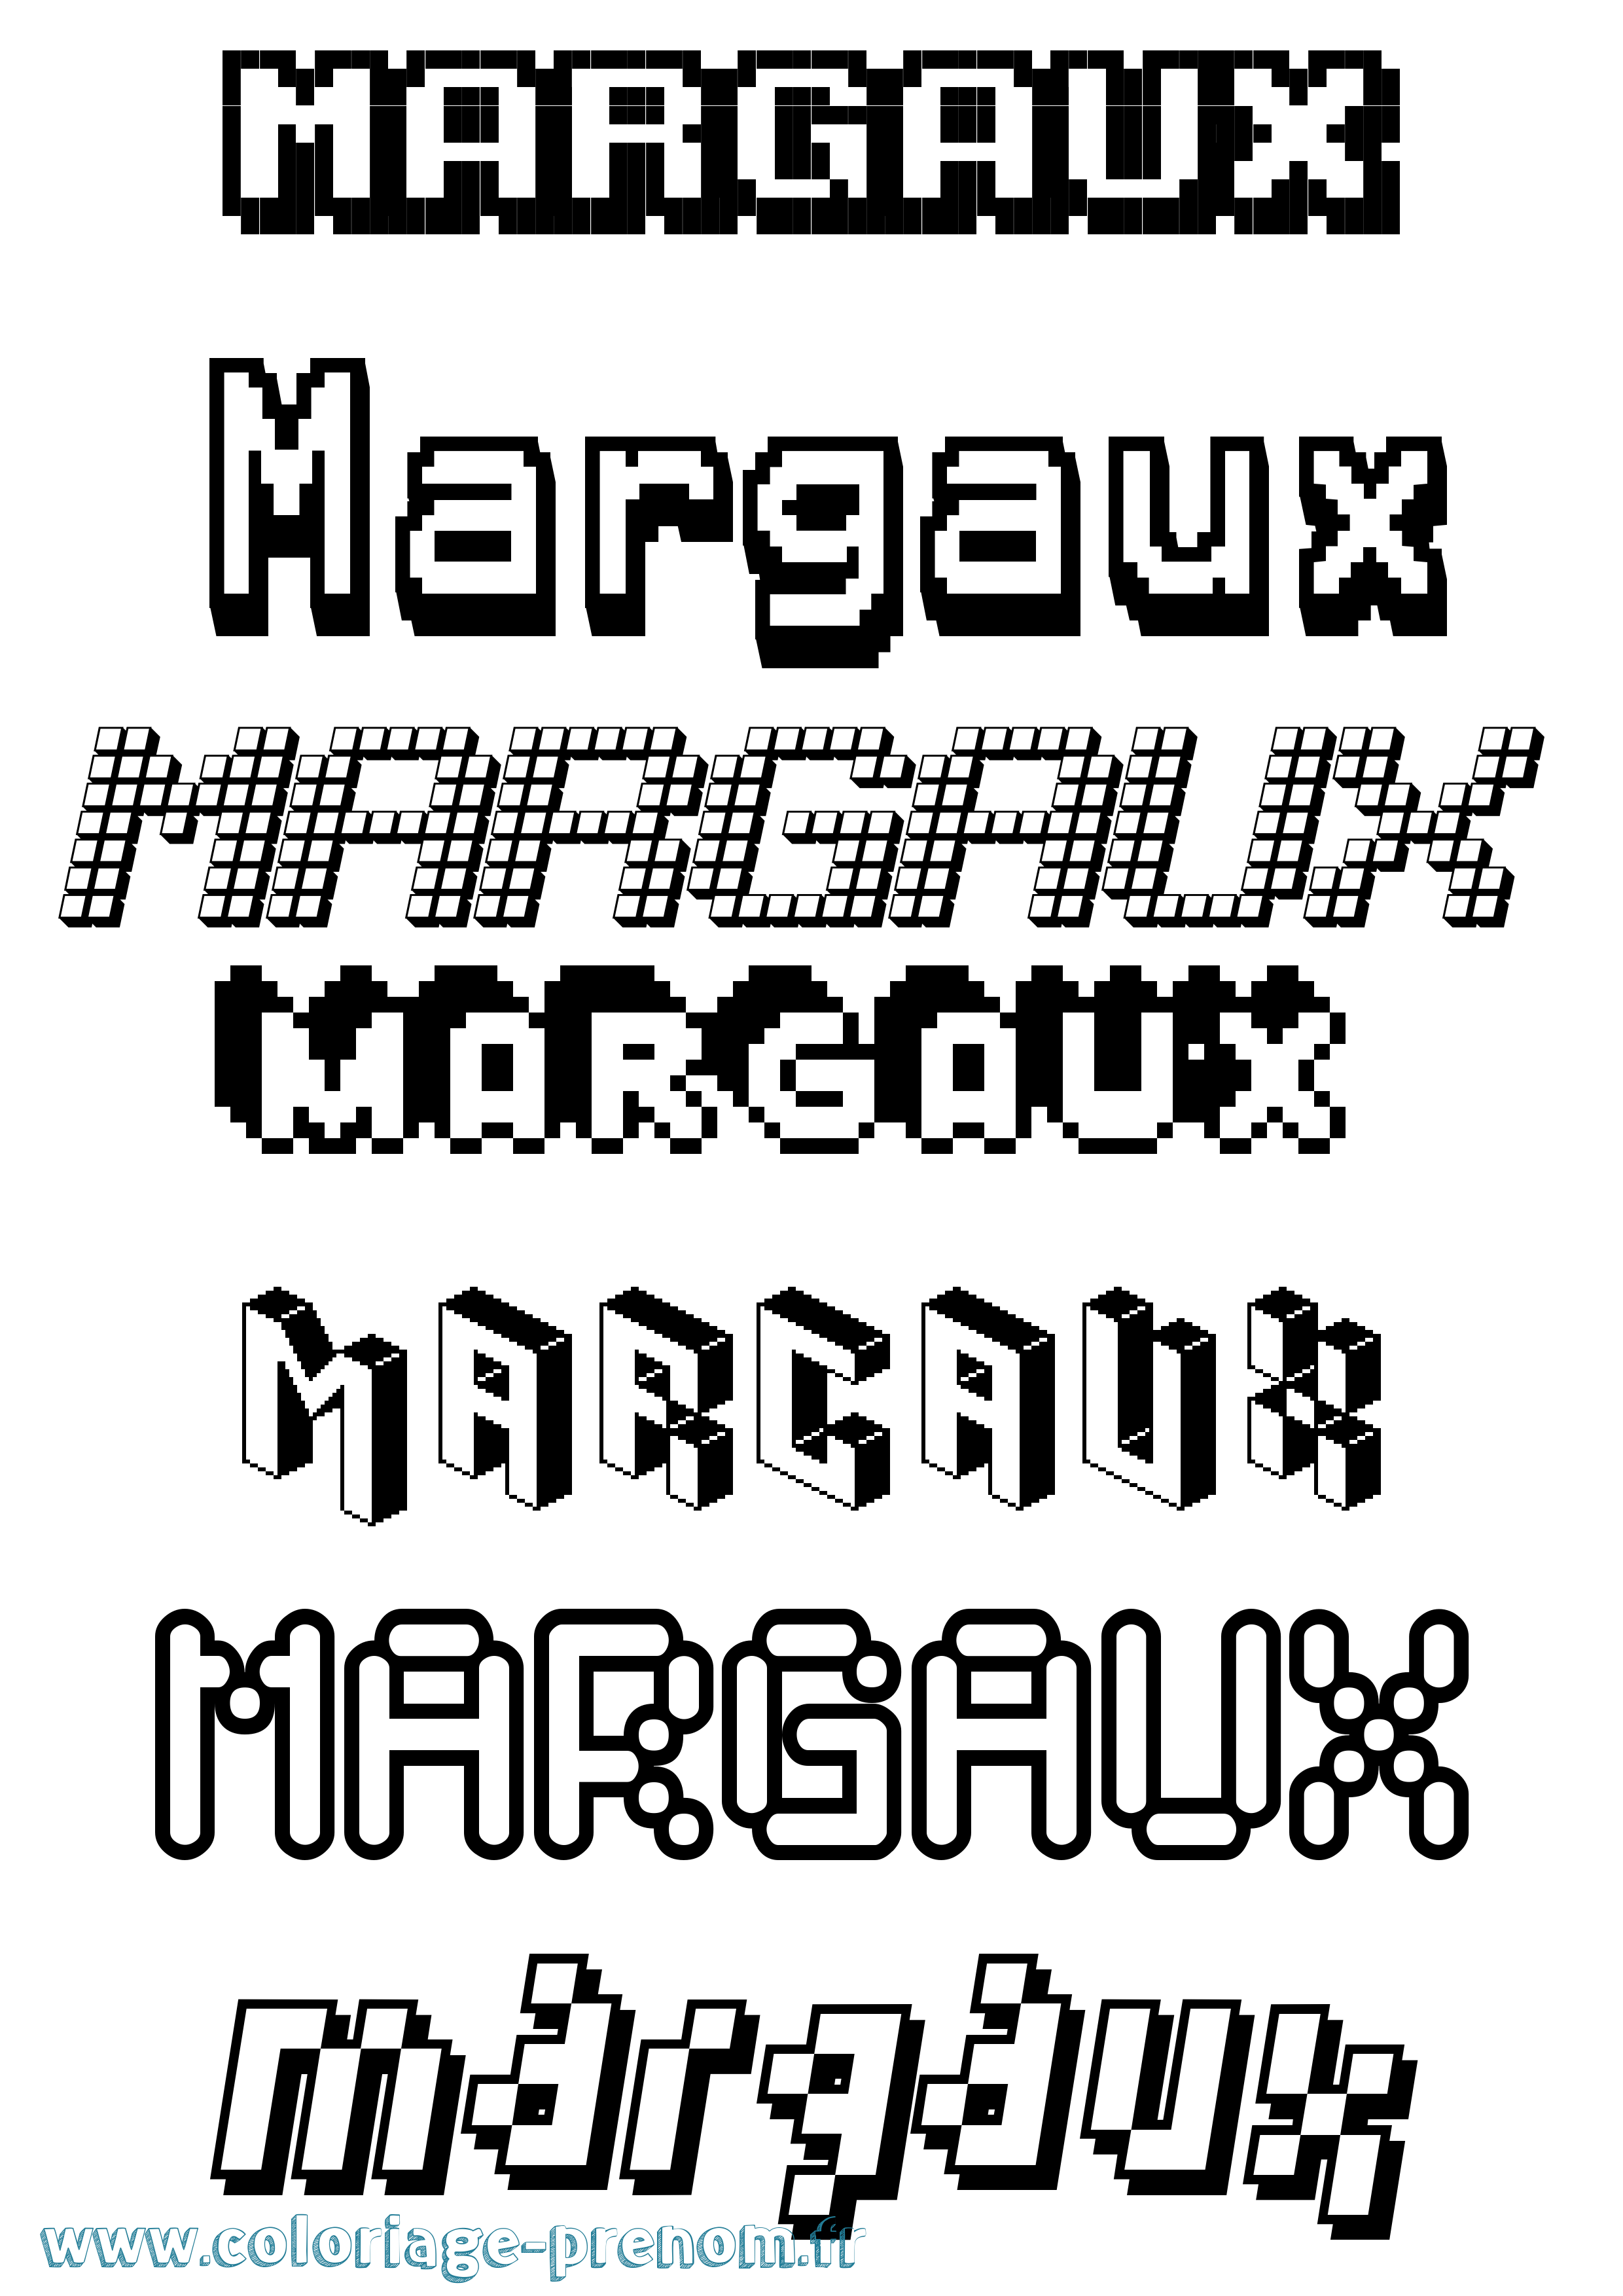 Coloriage prénom Margaux